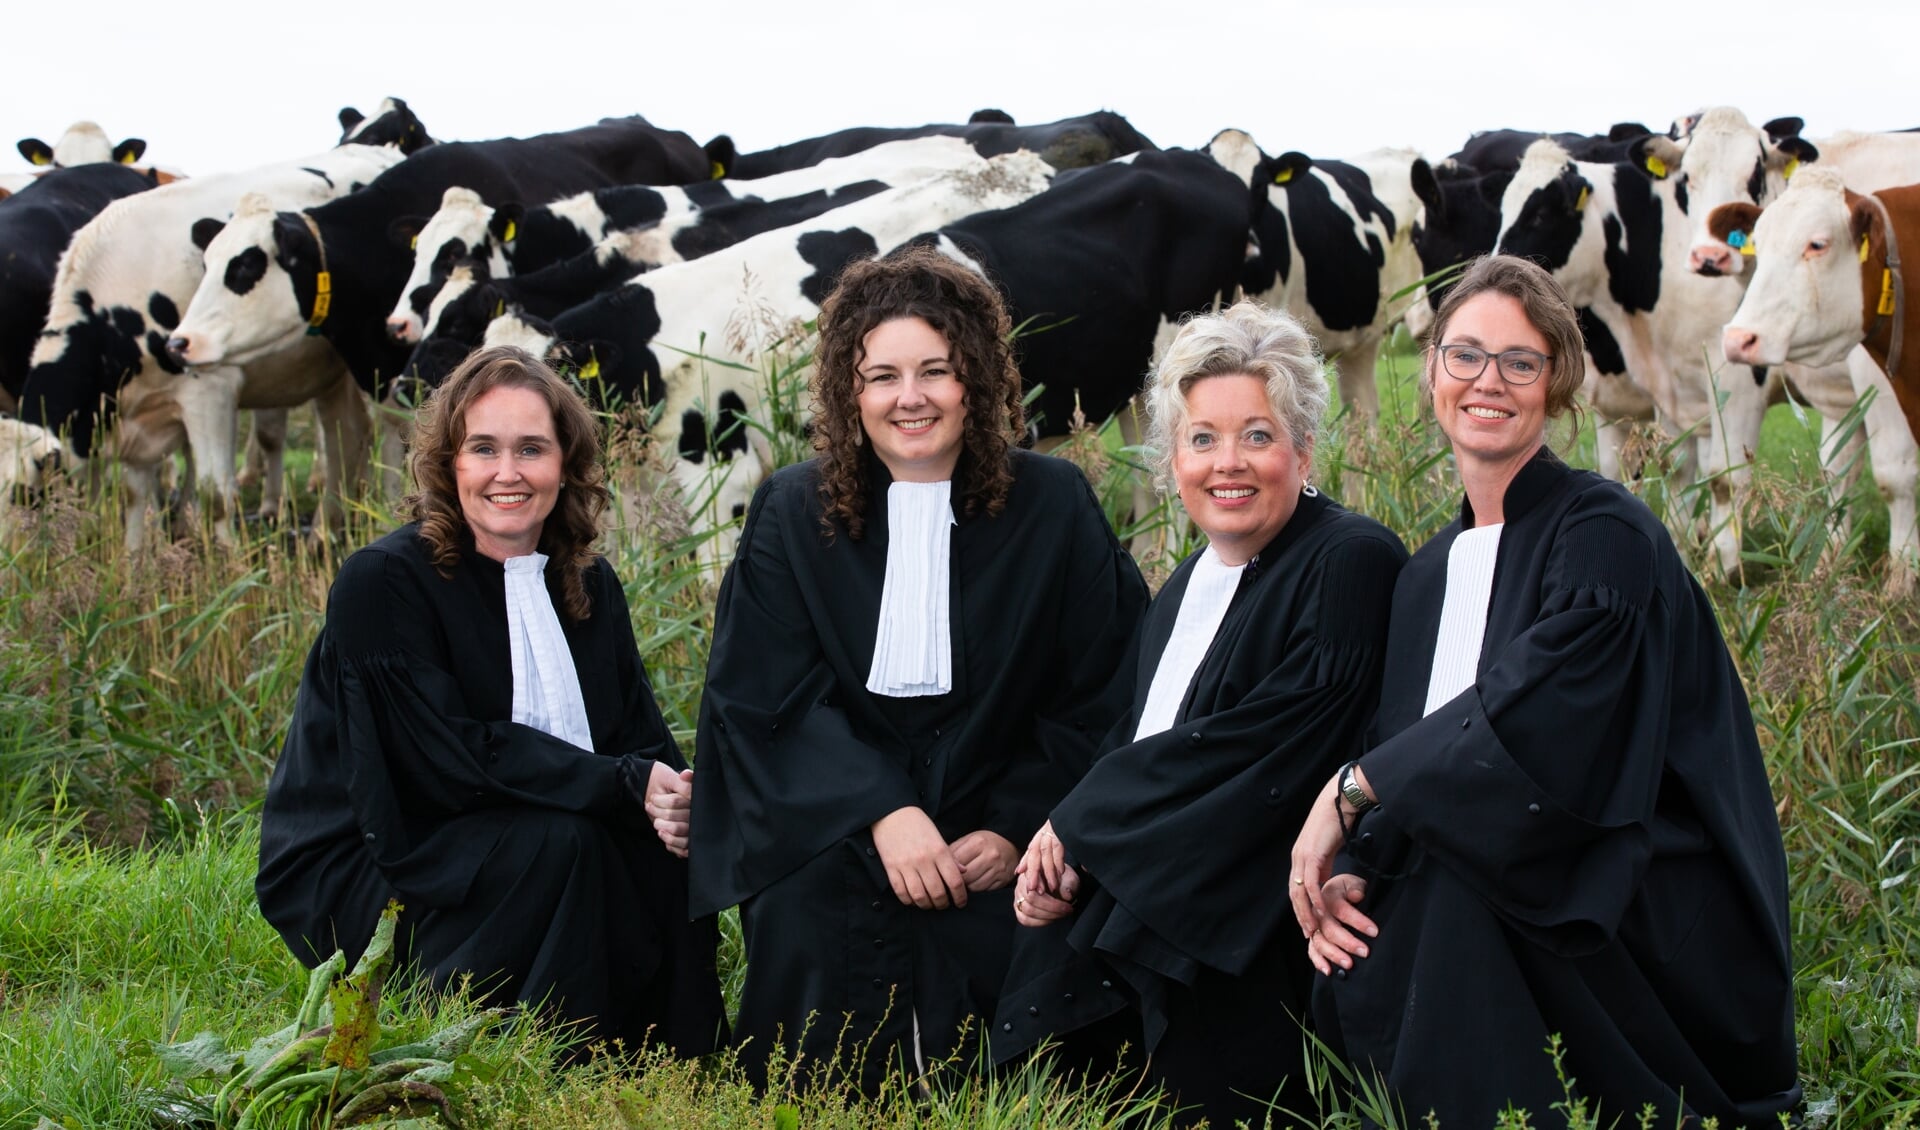 De vier vrouwelijke advocaten van Kooi Advocaten, van links naar rechts: Chantal Bosch,  Lisa Alstein, Baukje Kooi en Baukje Hiemstra.